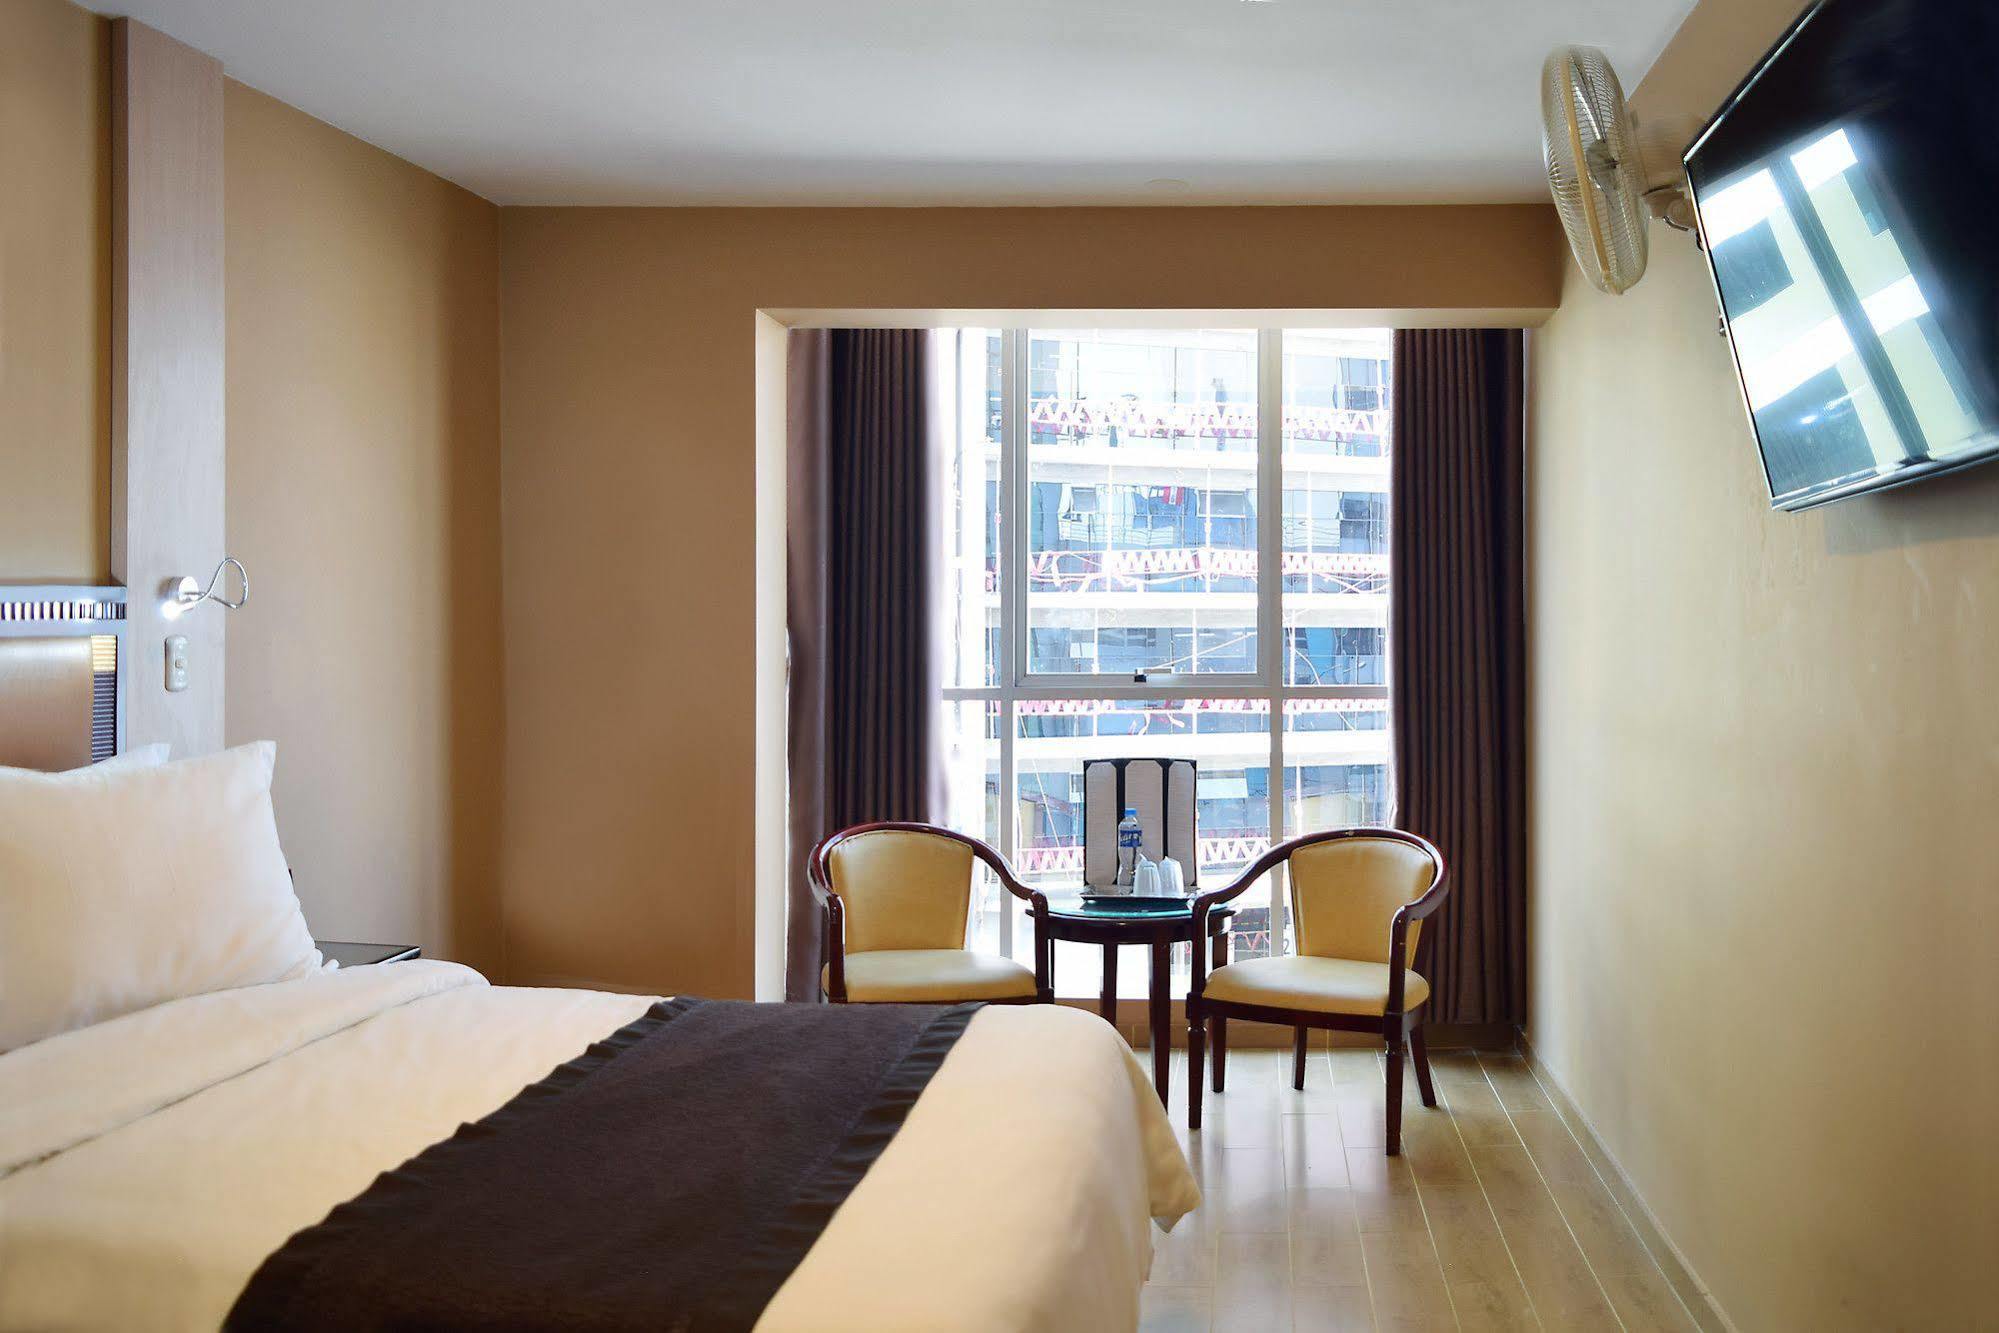 Gran Mundo Hotel & Suites Lima Exterior foto